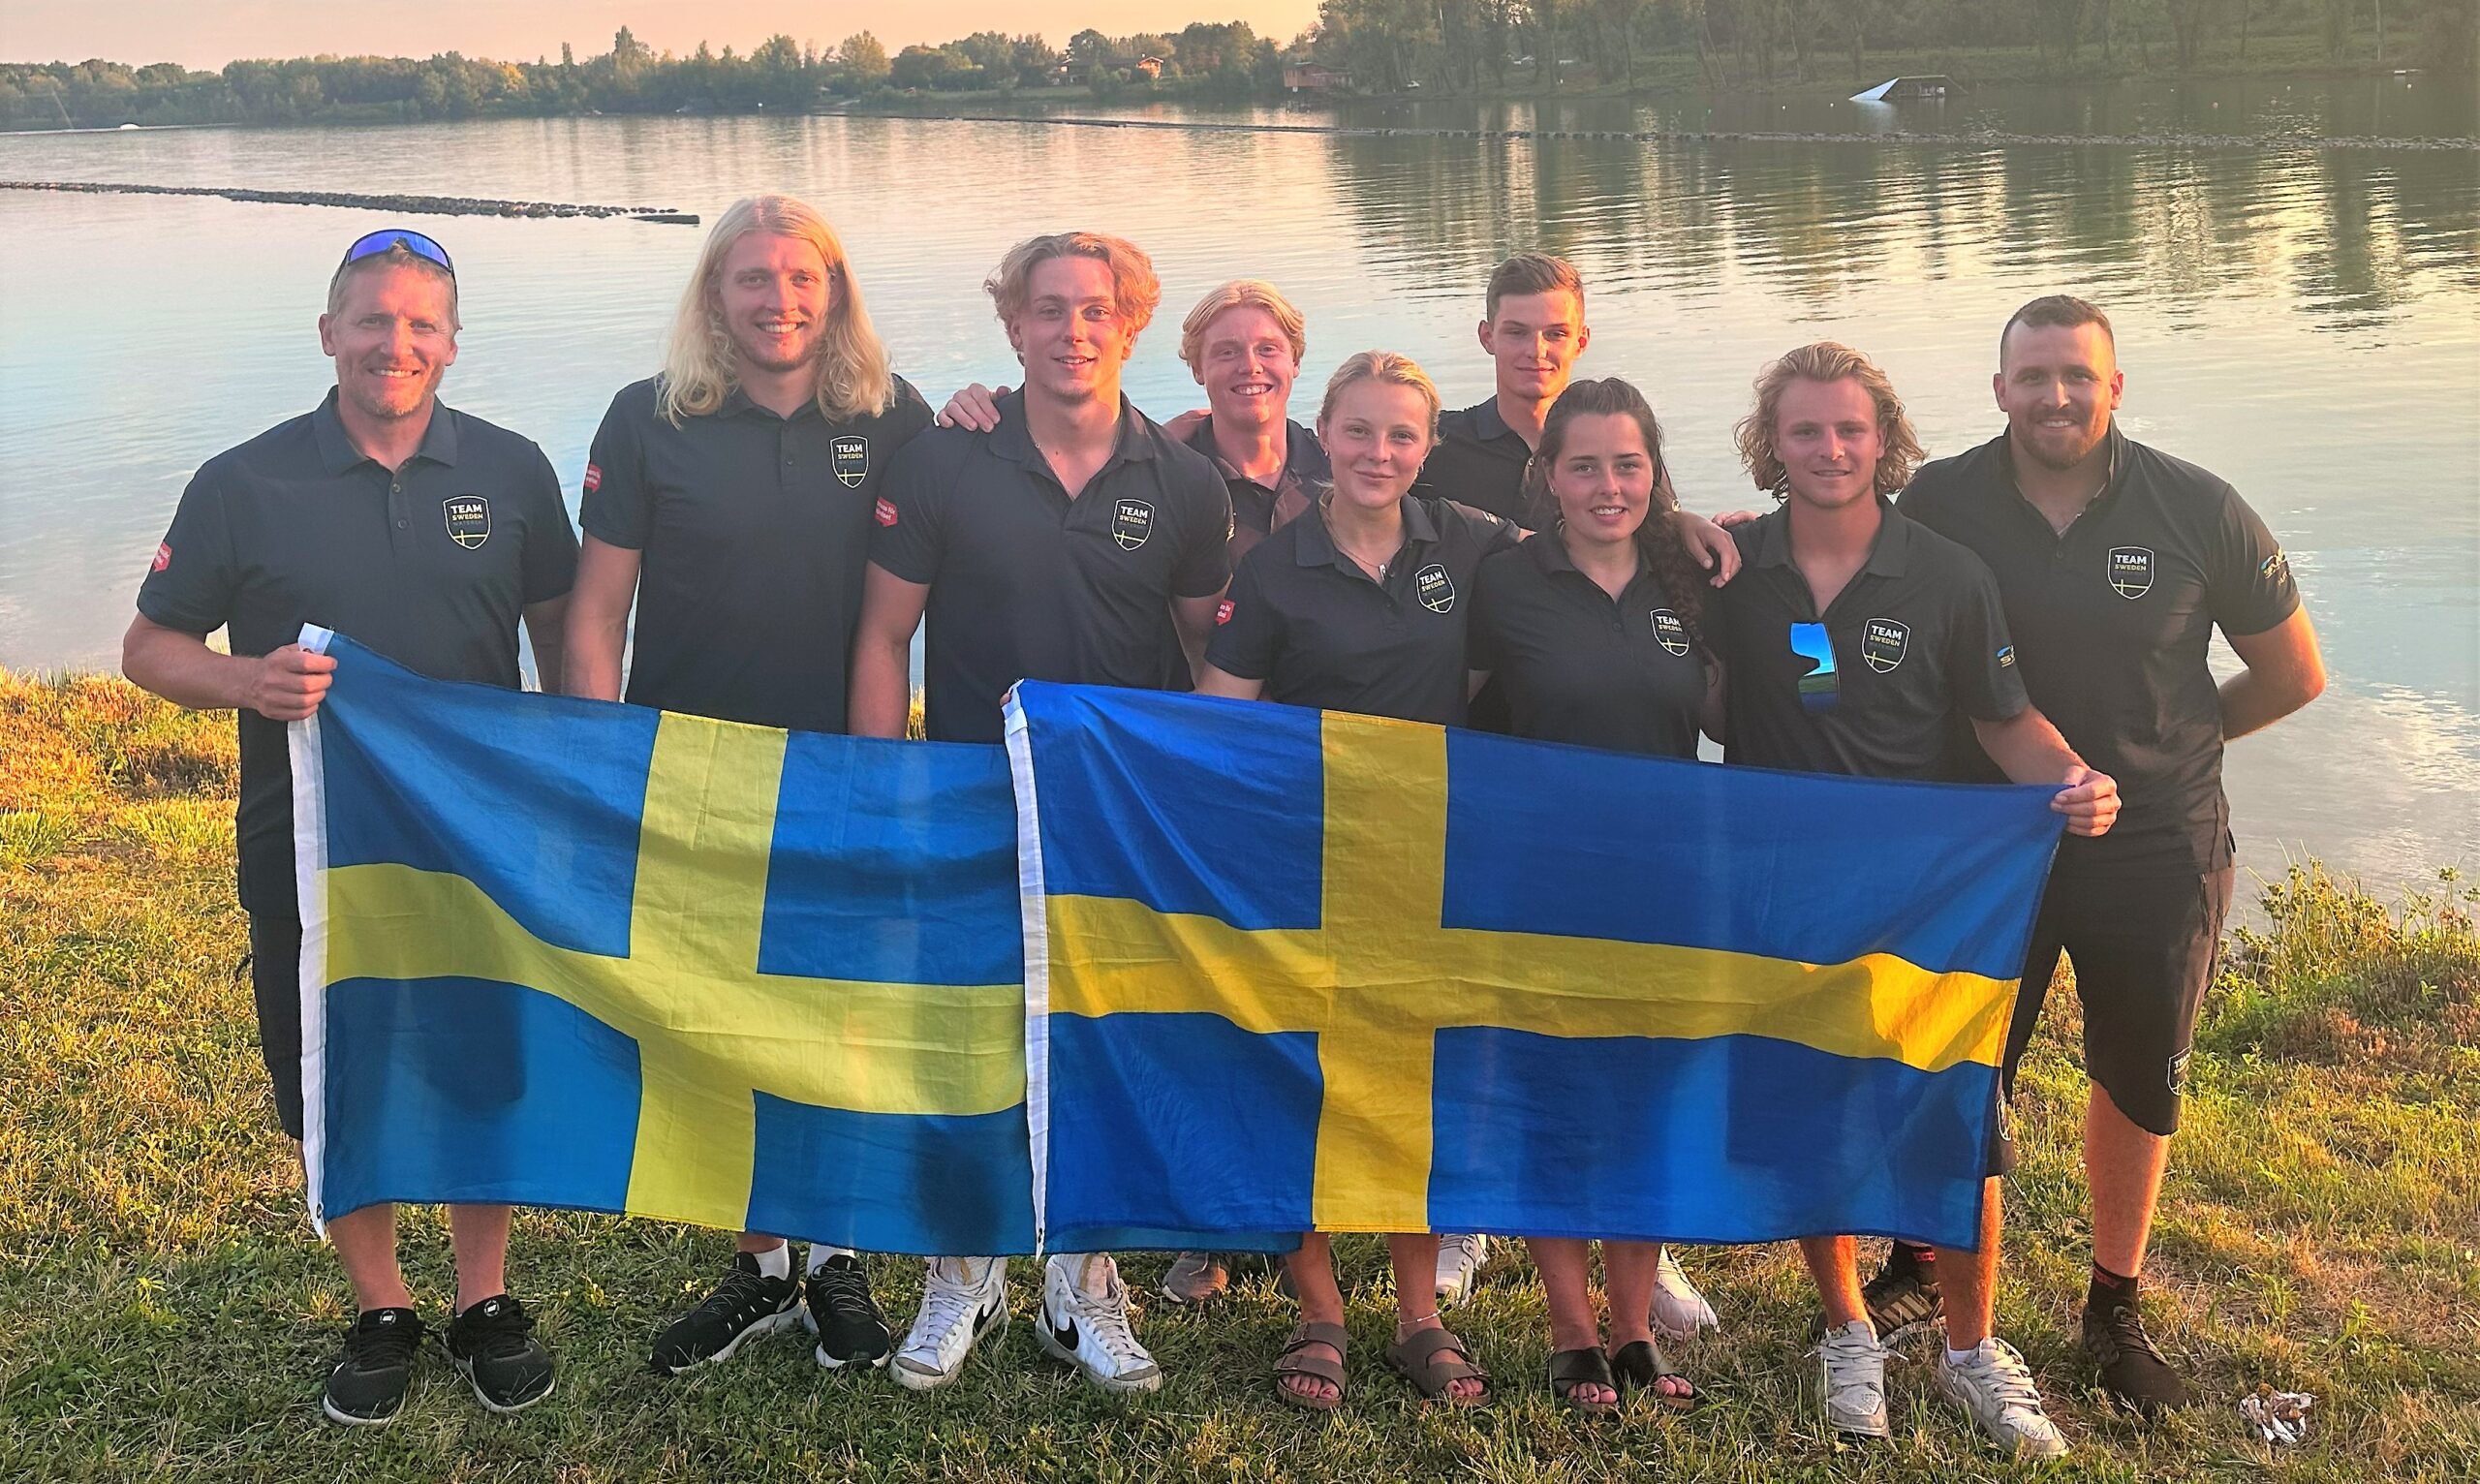 Vattenskidor – Vällyckat U-21 EM i Frankrike med Team Sweden på 4:e plats i lagtävlingen!